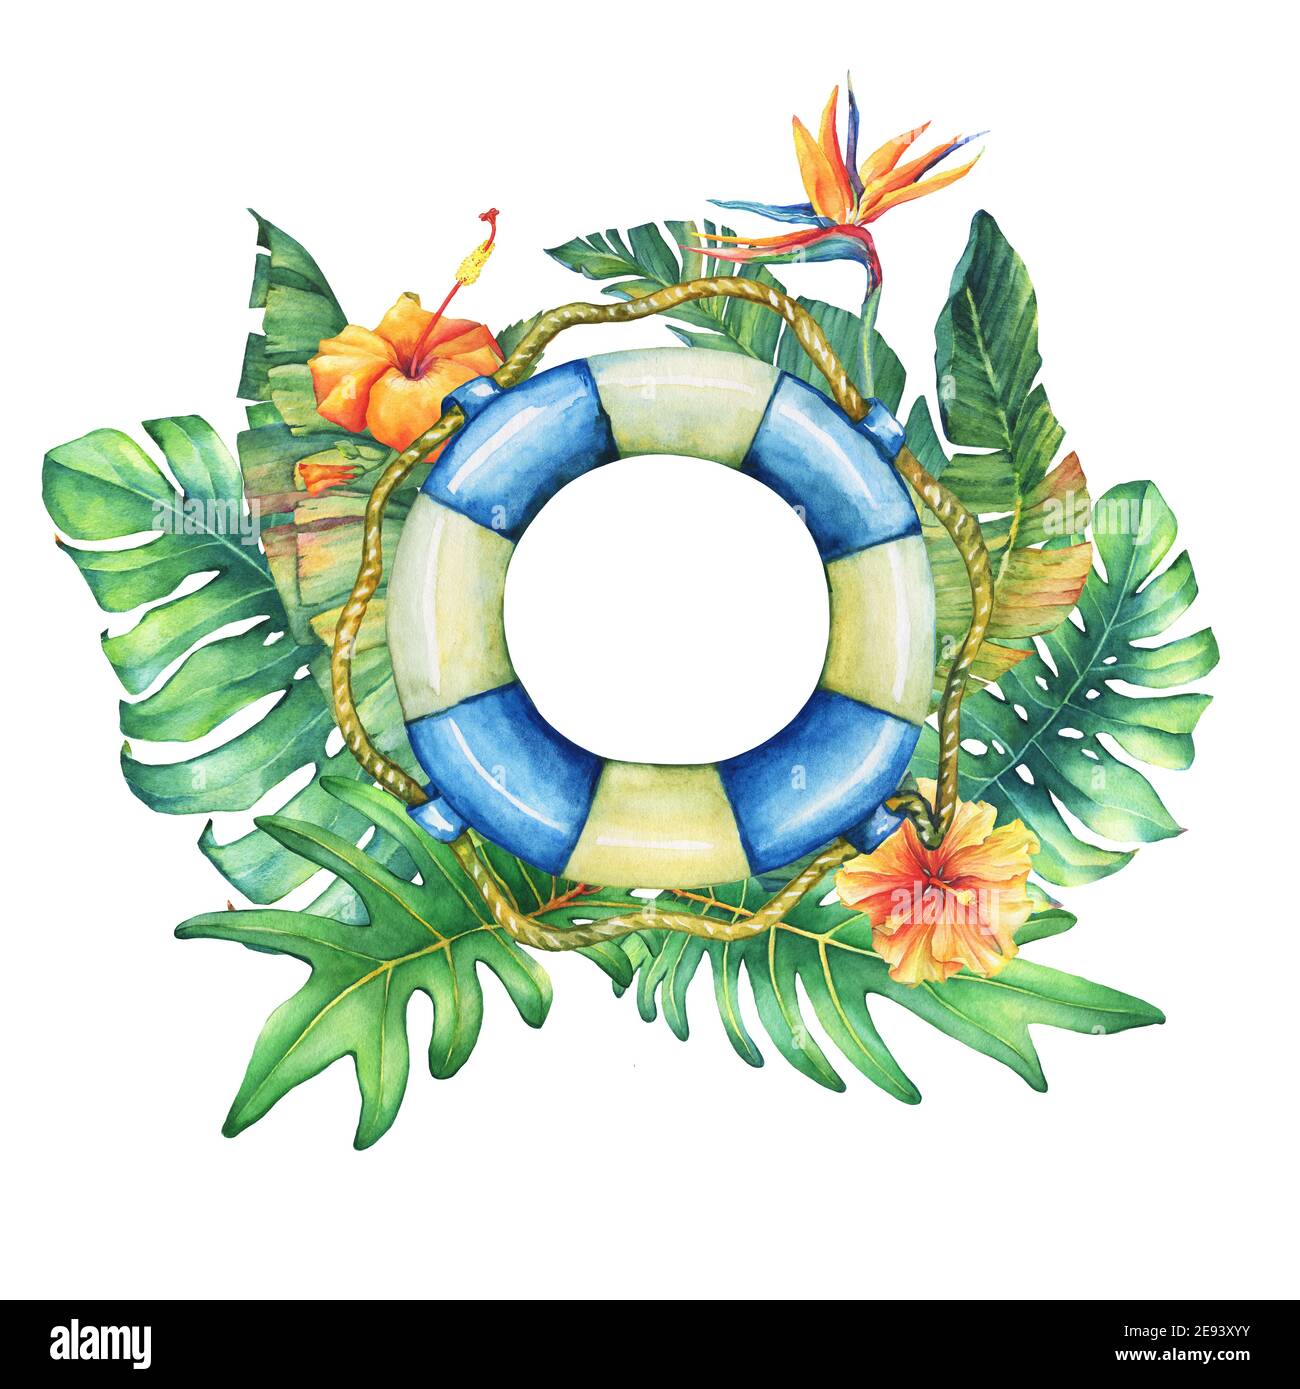 Cadre circulaire avec bouée de sauvetage, fleurs et plantes tropicales. Aquarelle dessinée à la main sur fond blanc. Banque D'Images